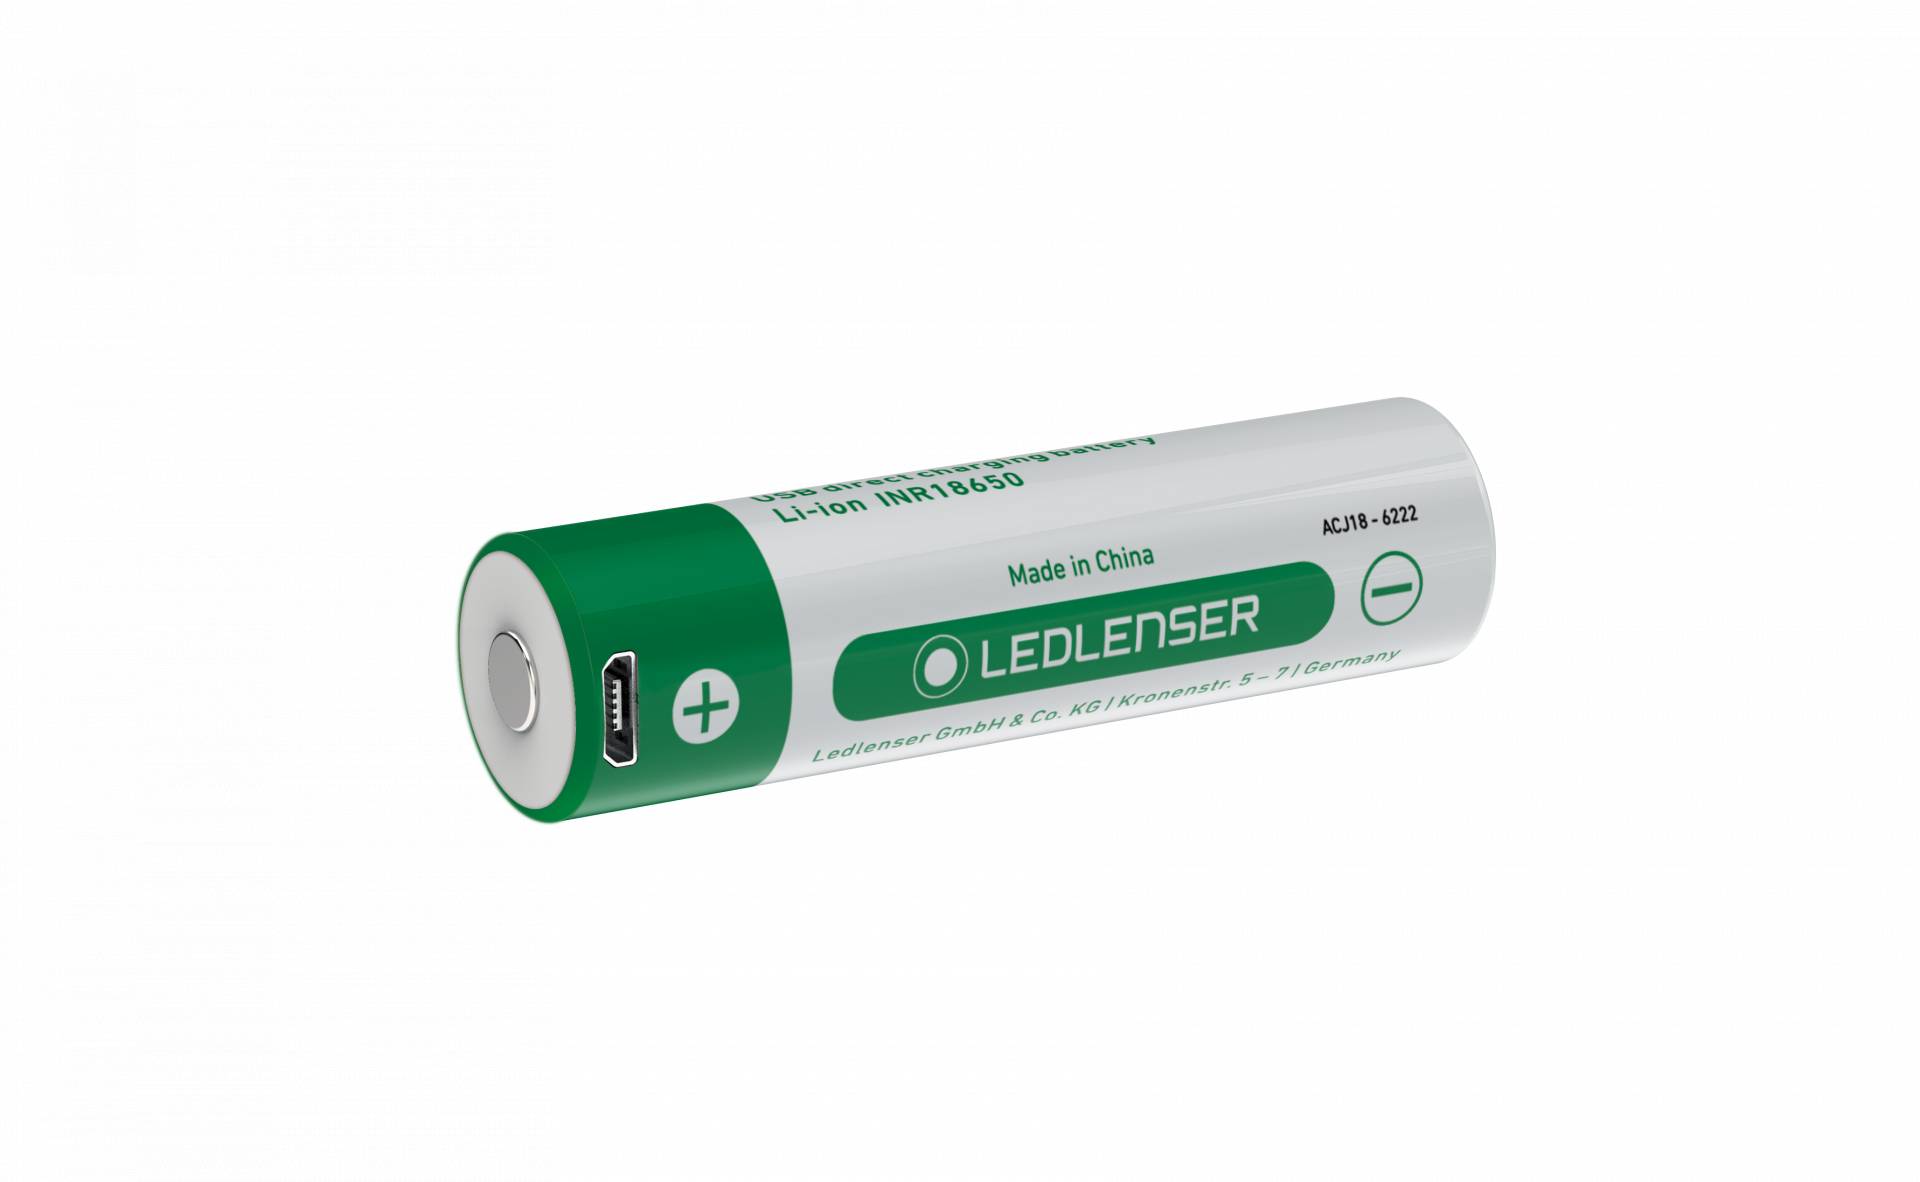 Ledlenser Li-Ion direct USB rechargeable Battery 3,6 V / 2500 mAh von Ledlenser GmbH & Co Kg